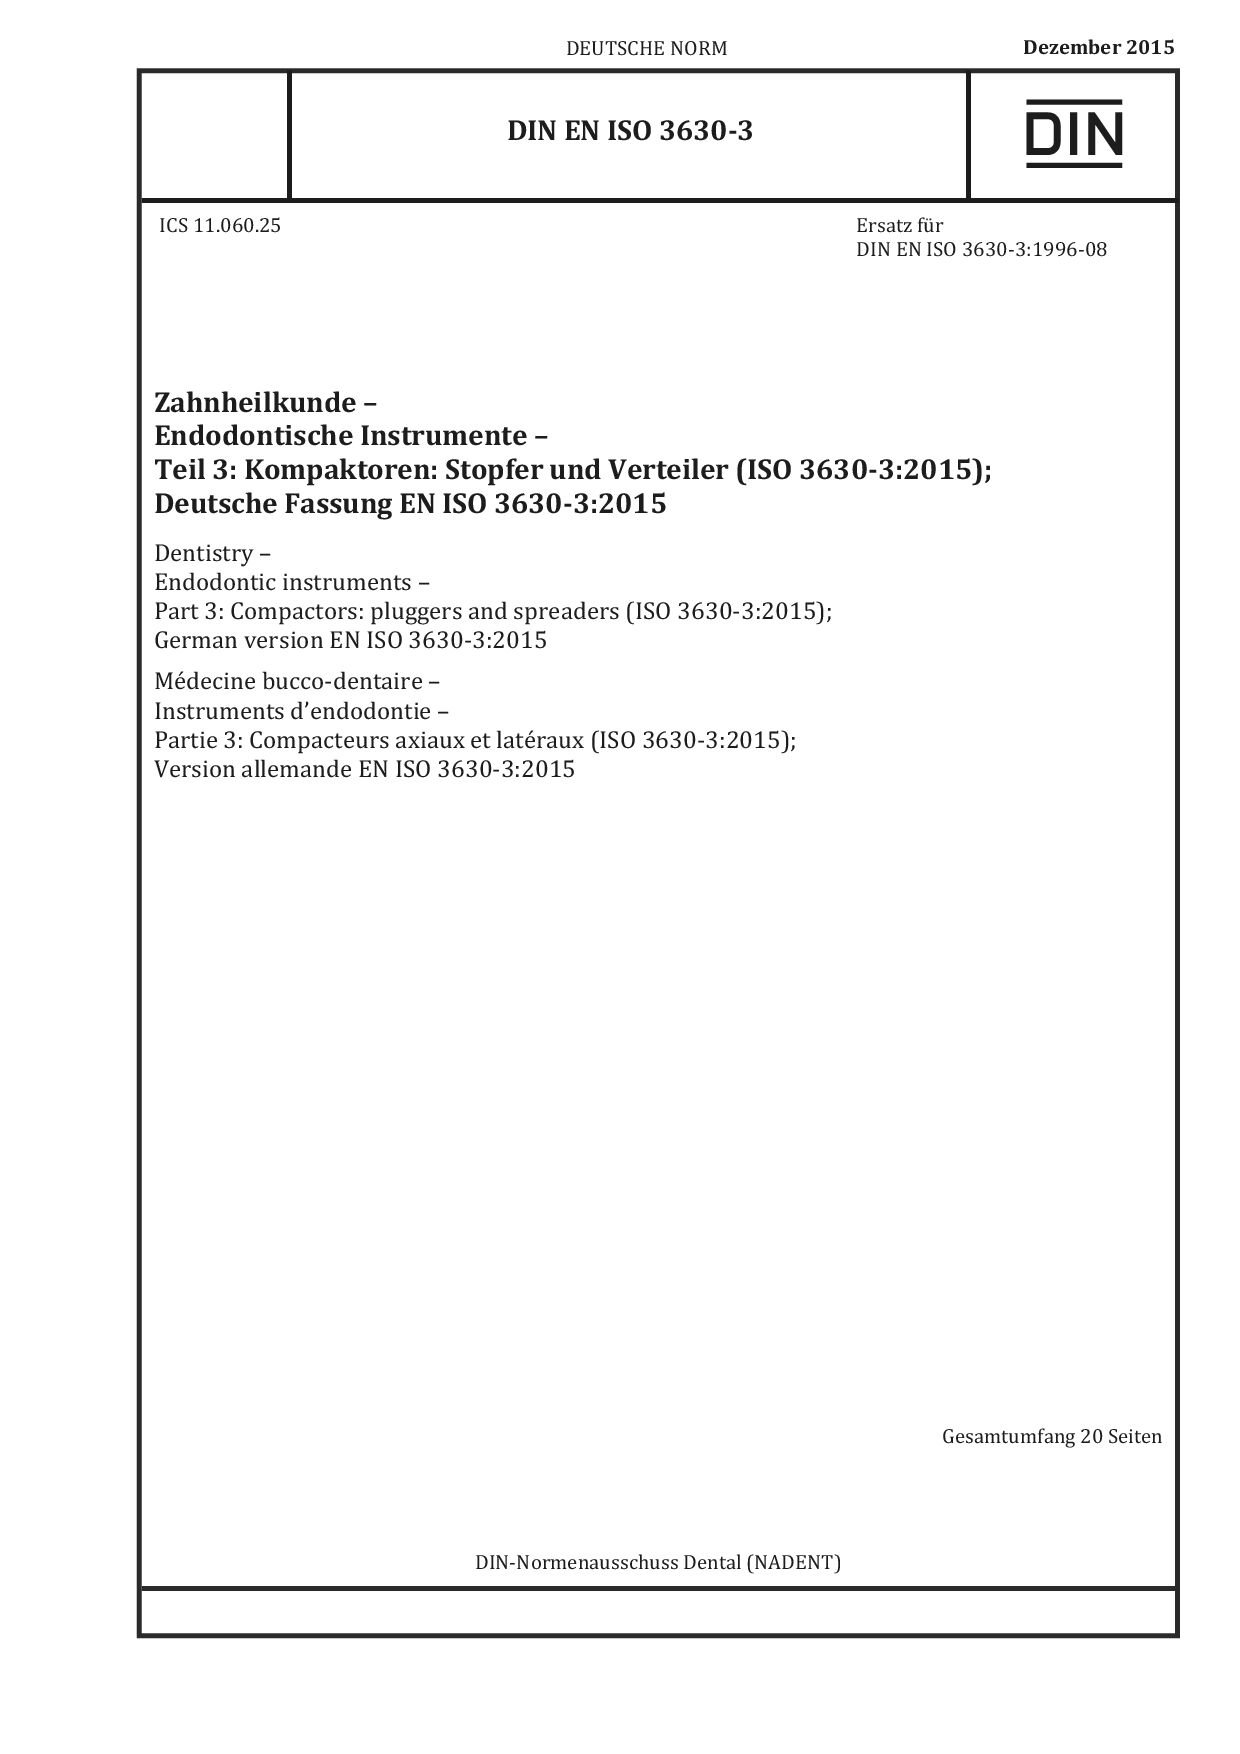 DIN EN ISO 3630-3:2015